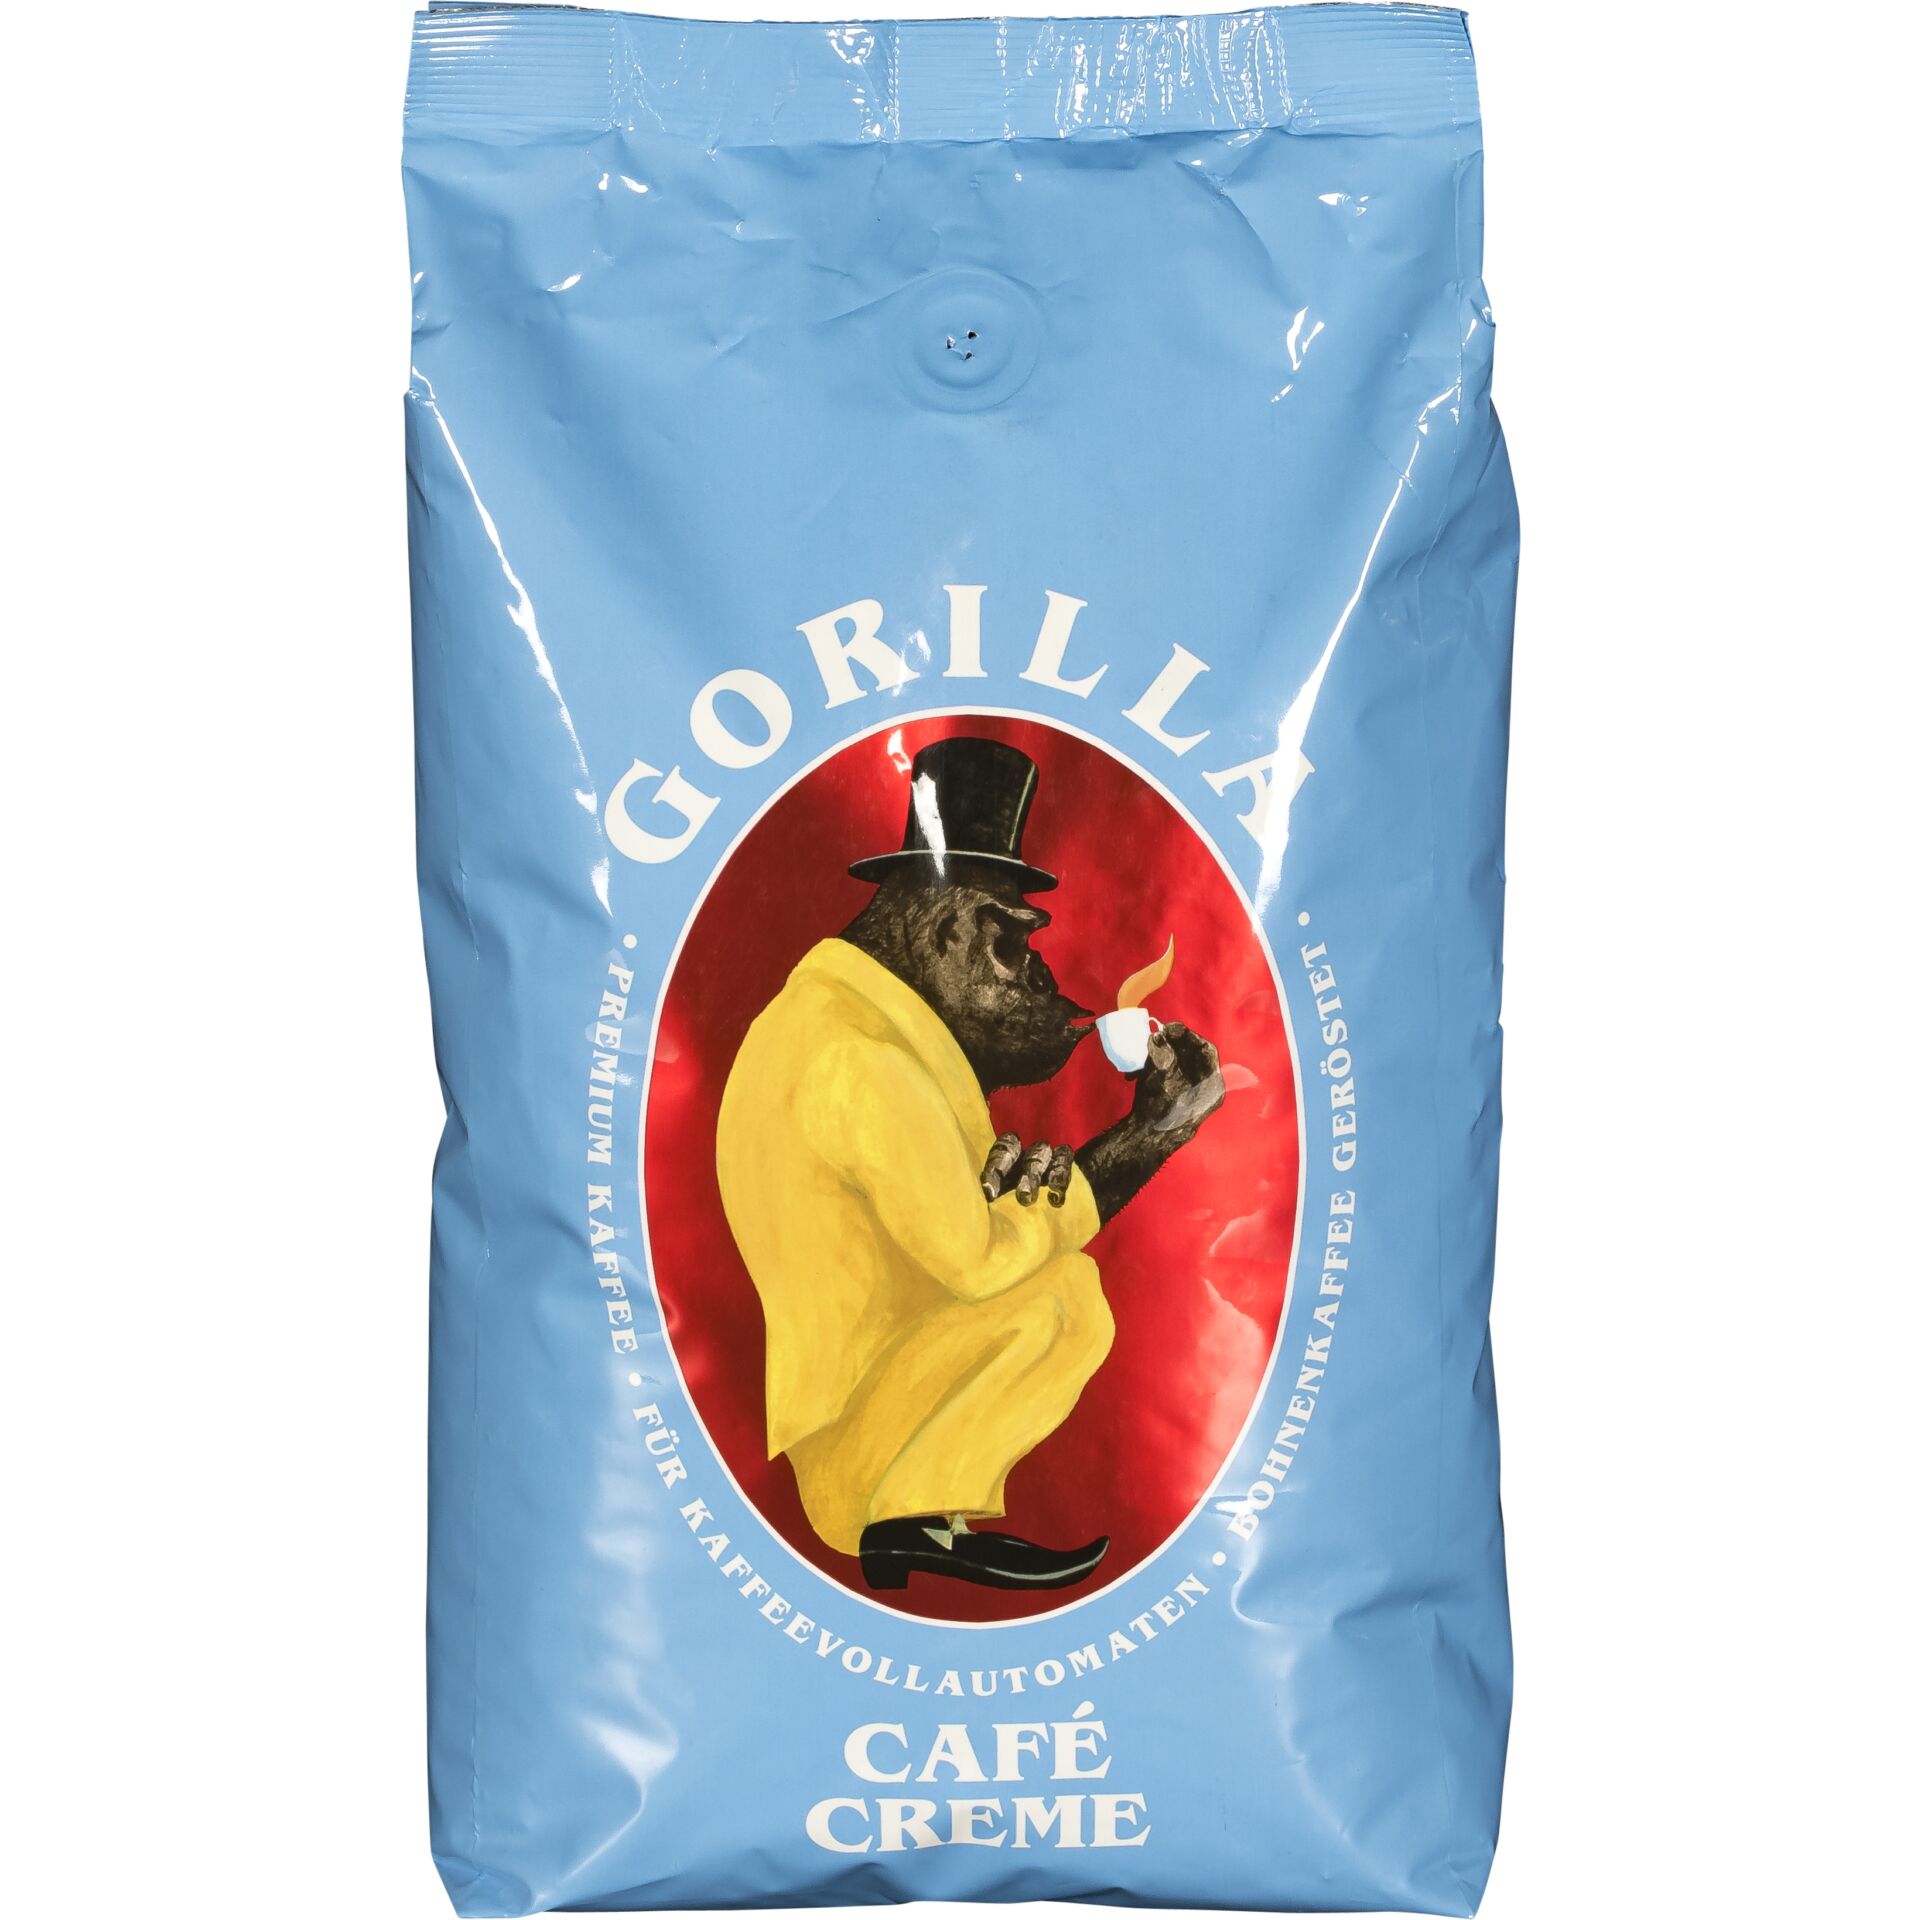 Joerges Gorilla Cafè Creme blu 1 Kg chicchi